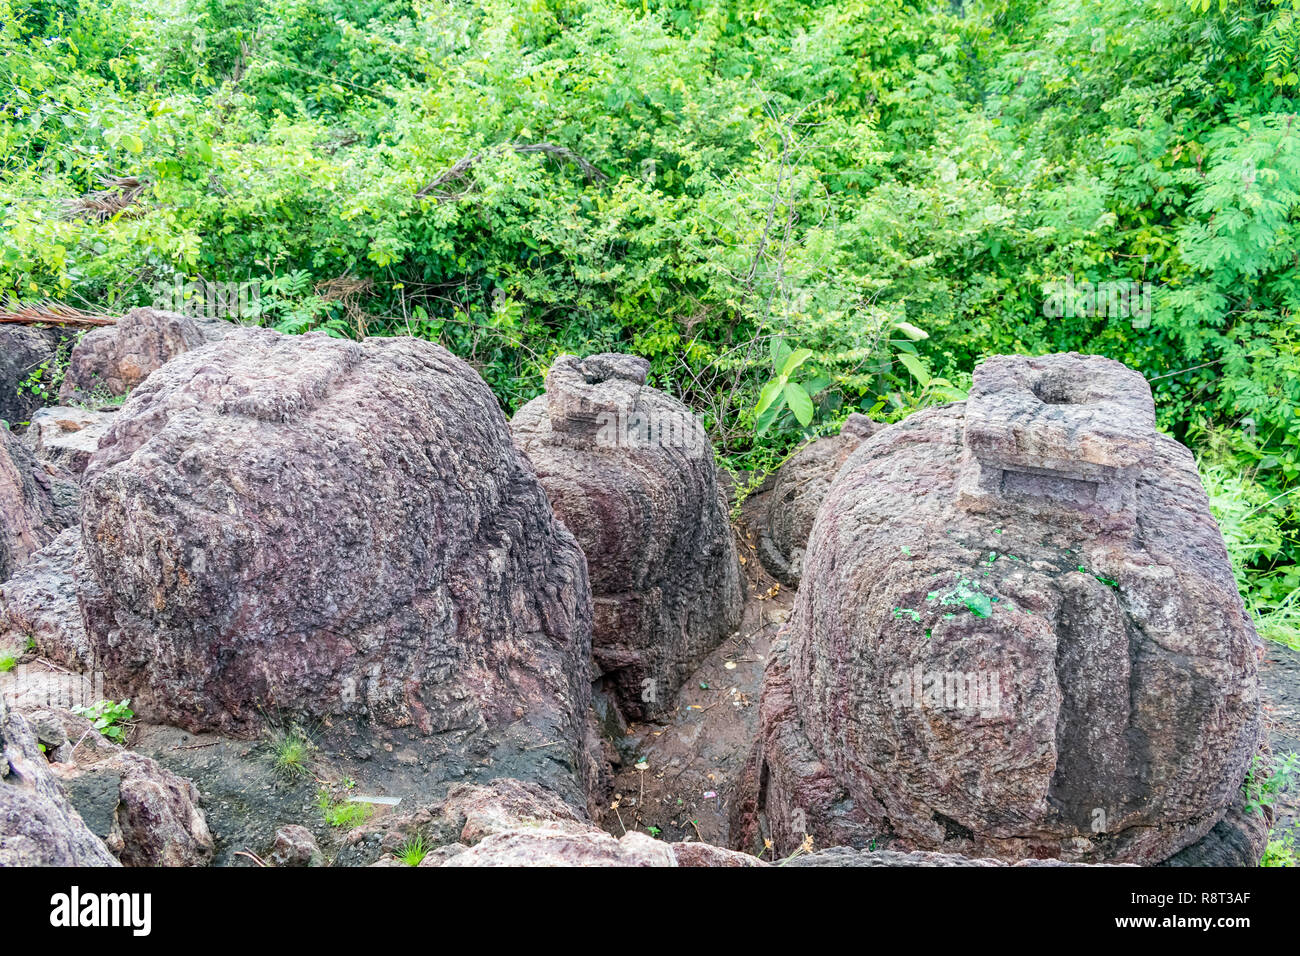 vista dall'alto di una grande roccia di forma circolare in cima a una collina che guarda bene con la foresta verde. Foto Stock